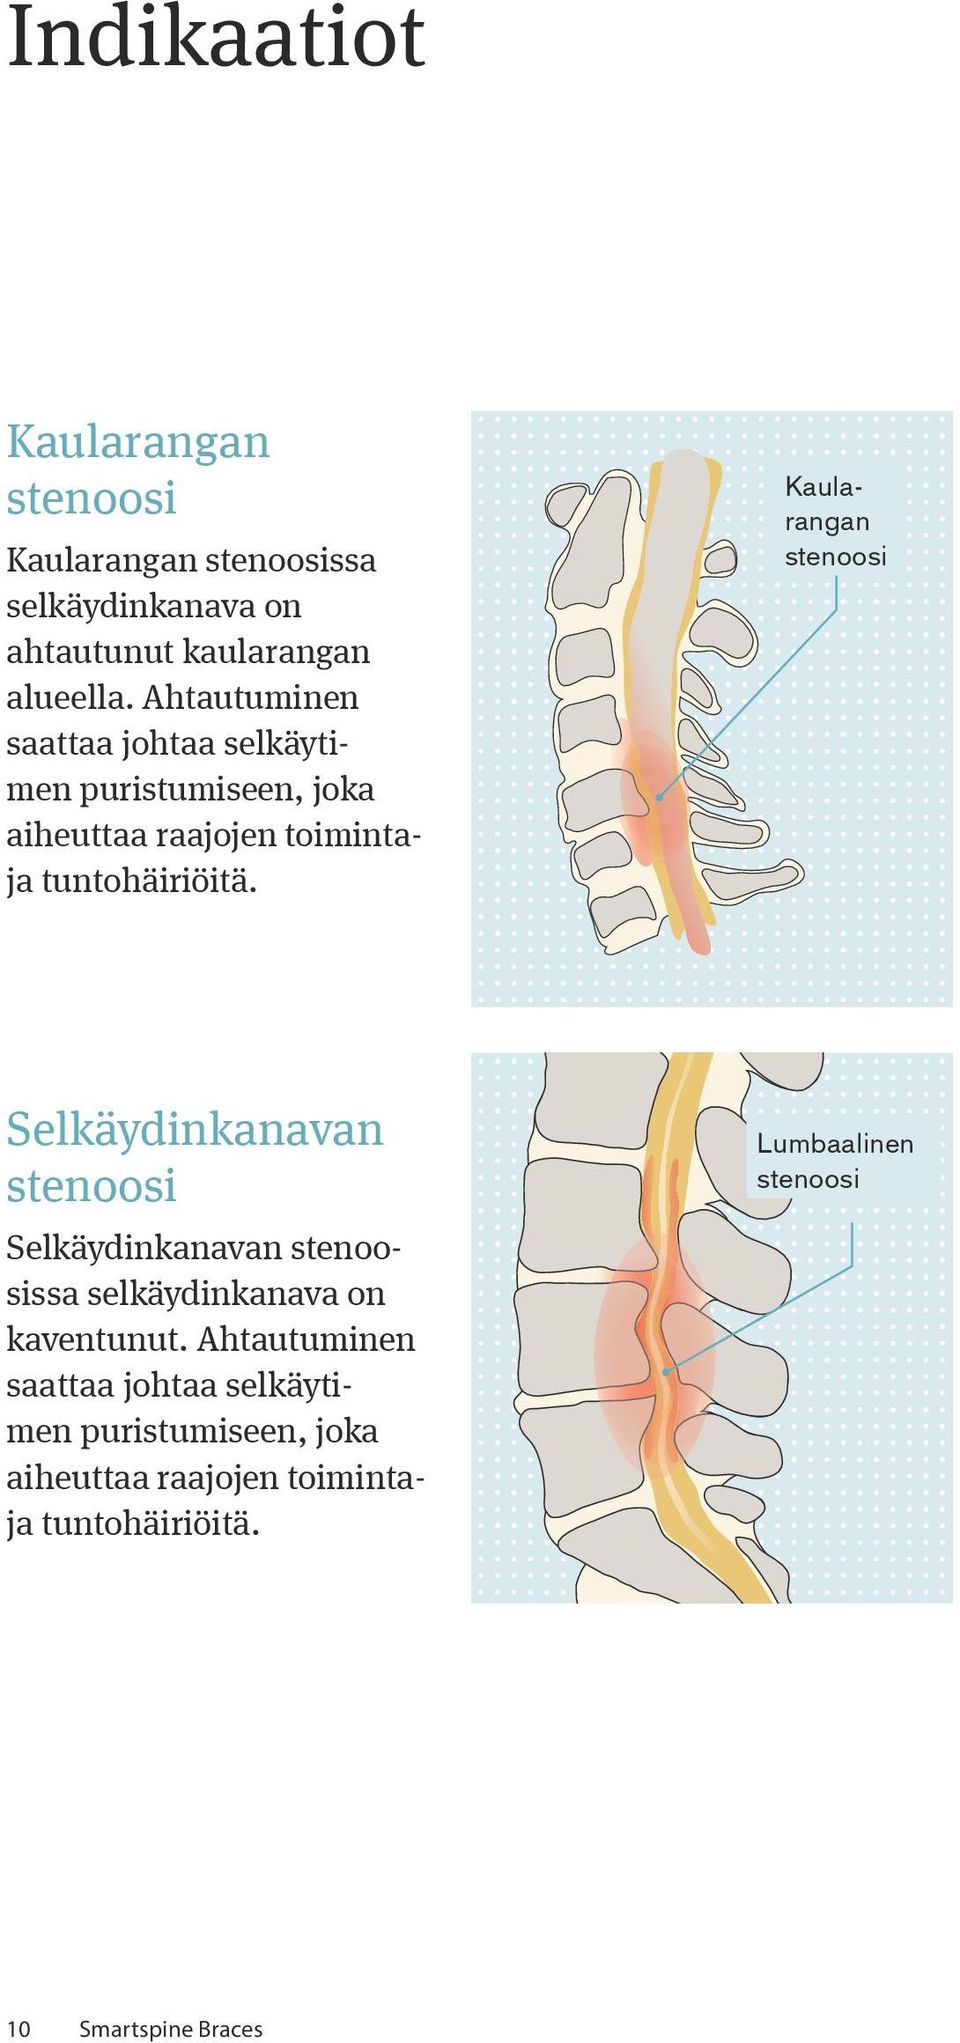 Kaularangan stenoosi Selkäydinkanavan stenoosi Selkäydinkanavan stenoosissa selkäydinkanava on kaventunut.